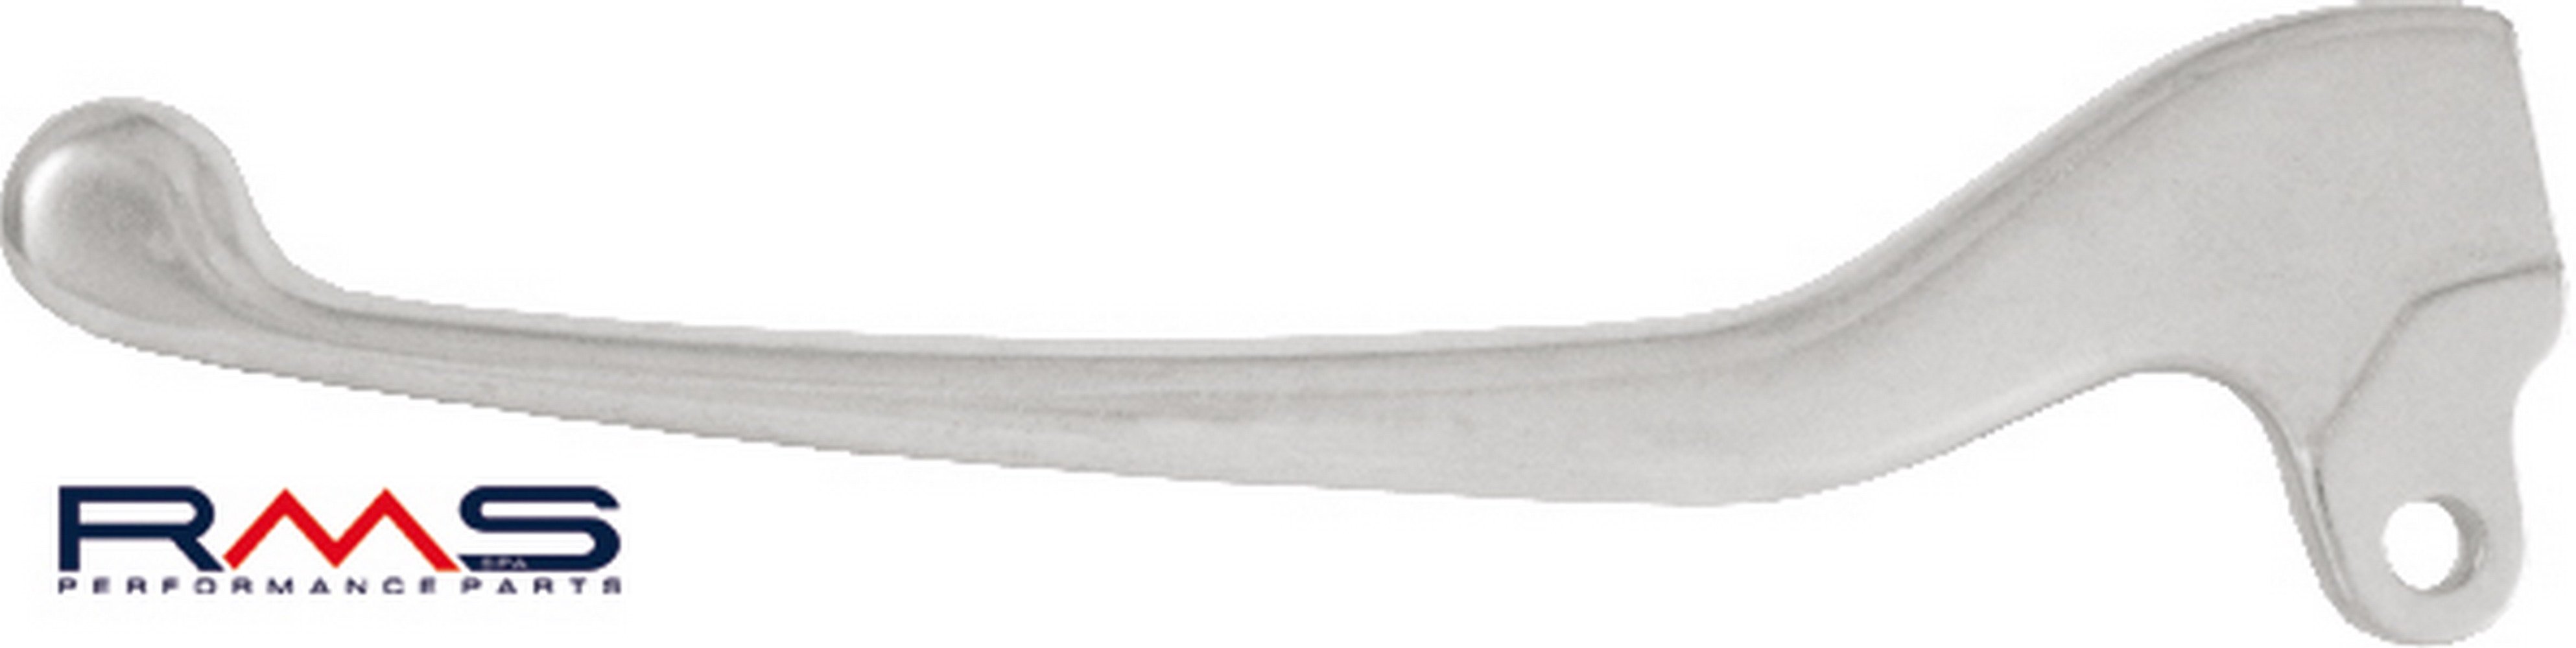 Obrázek produktu Páčka RMS 184100181 levý chrom Levý